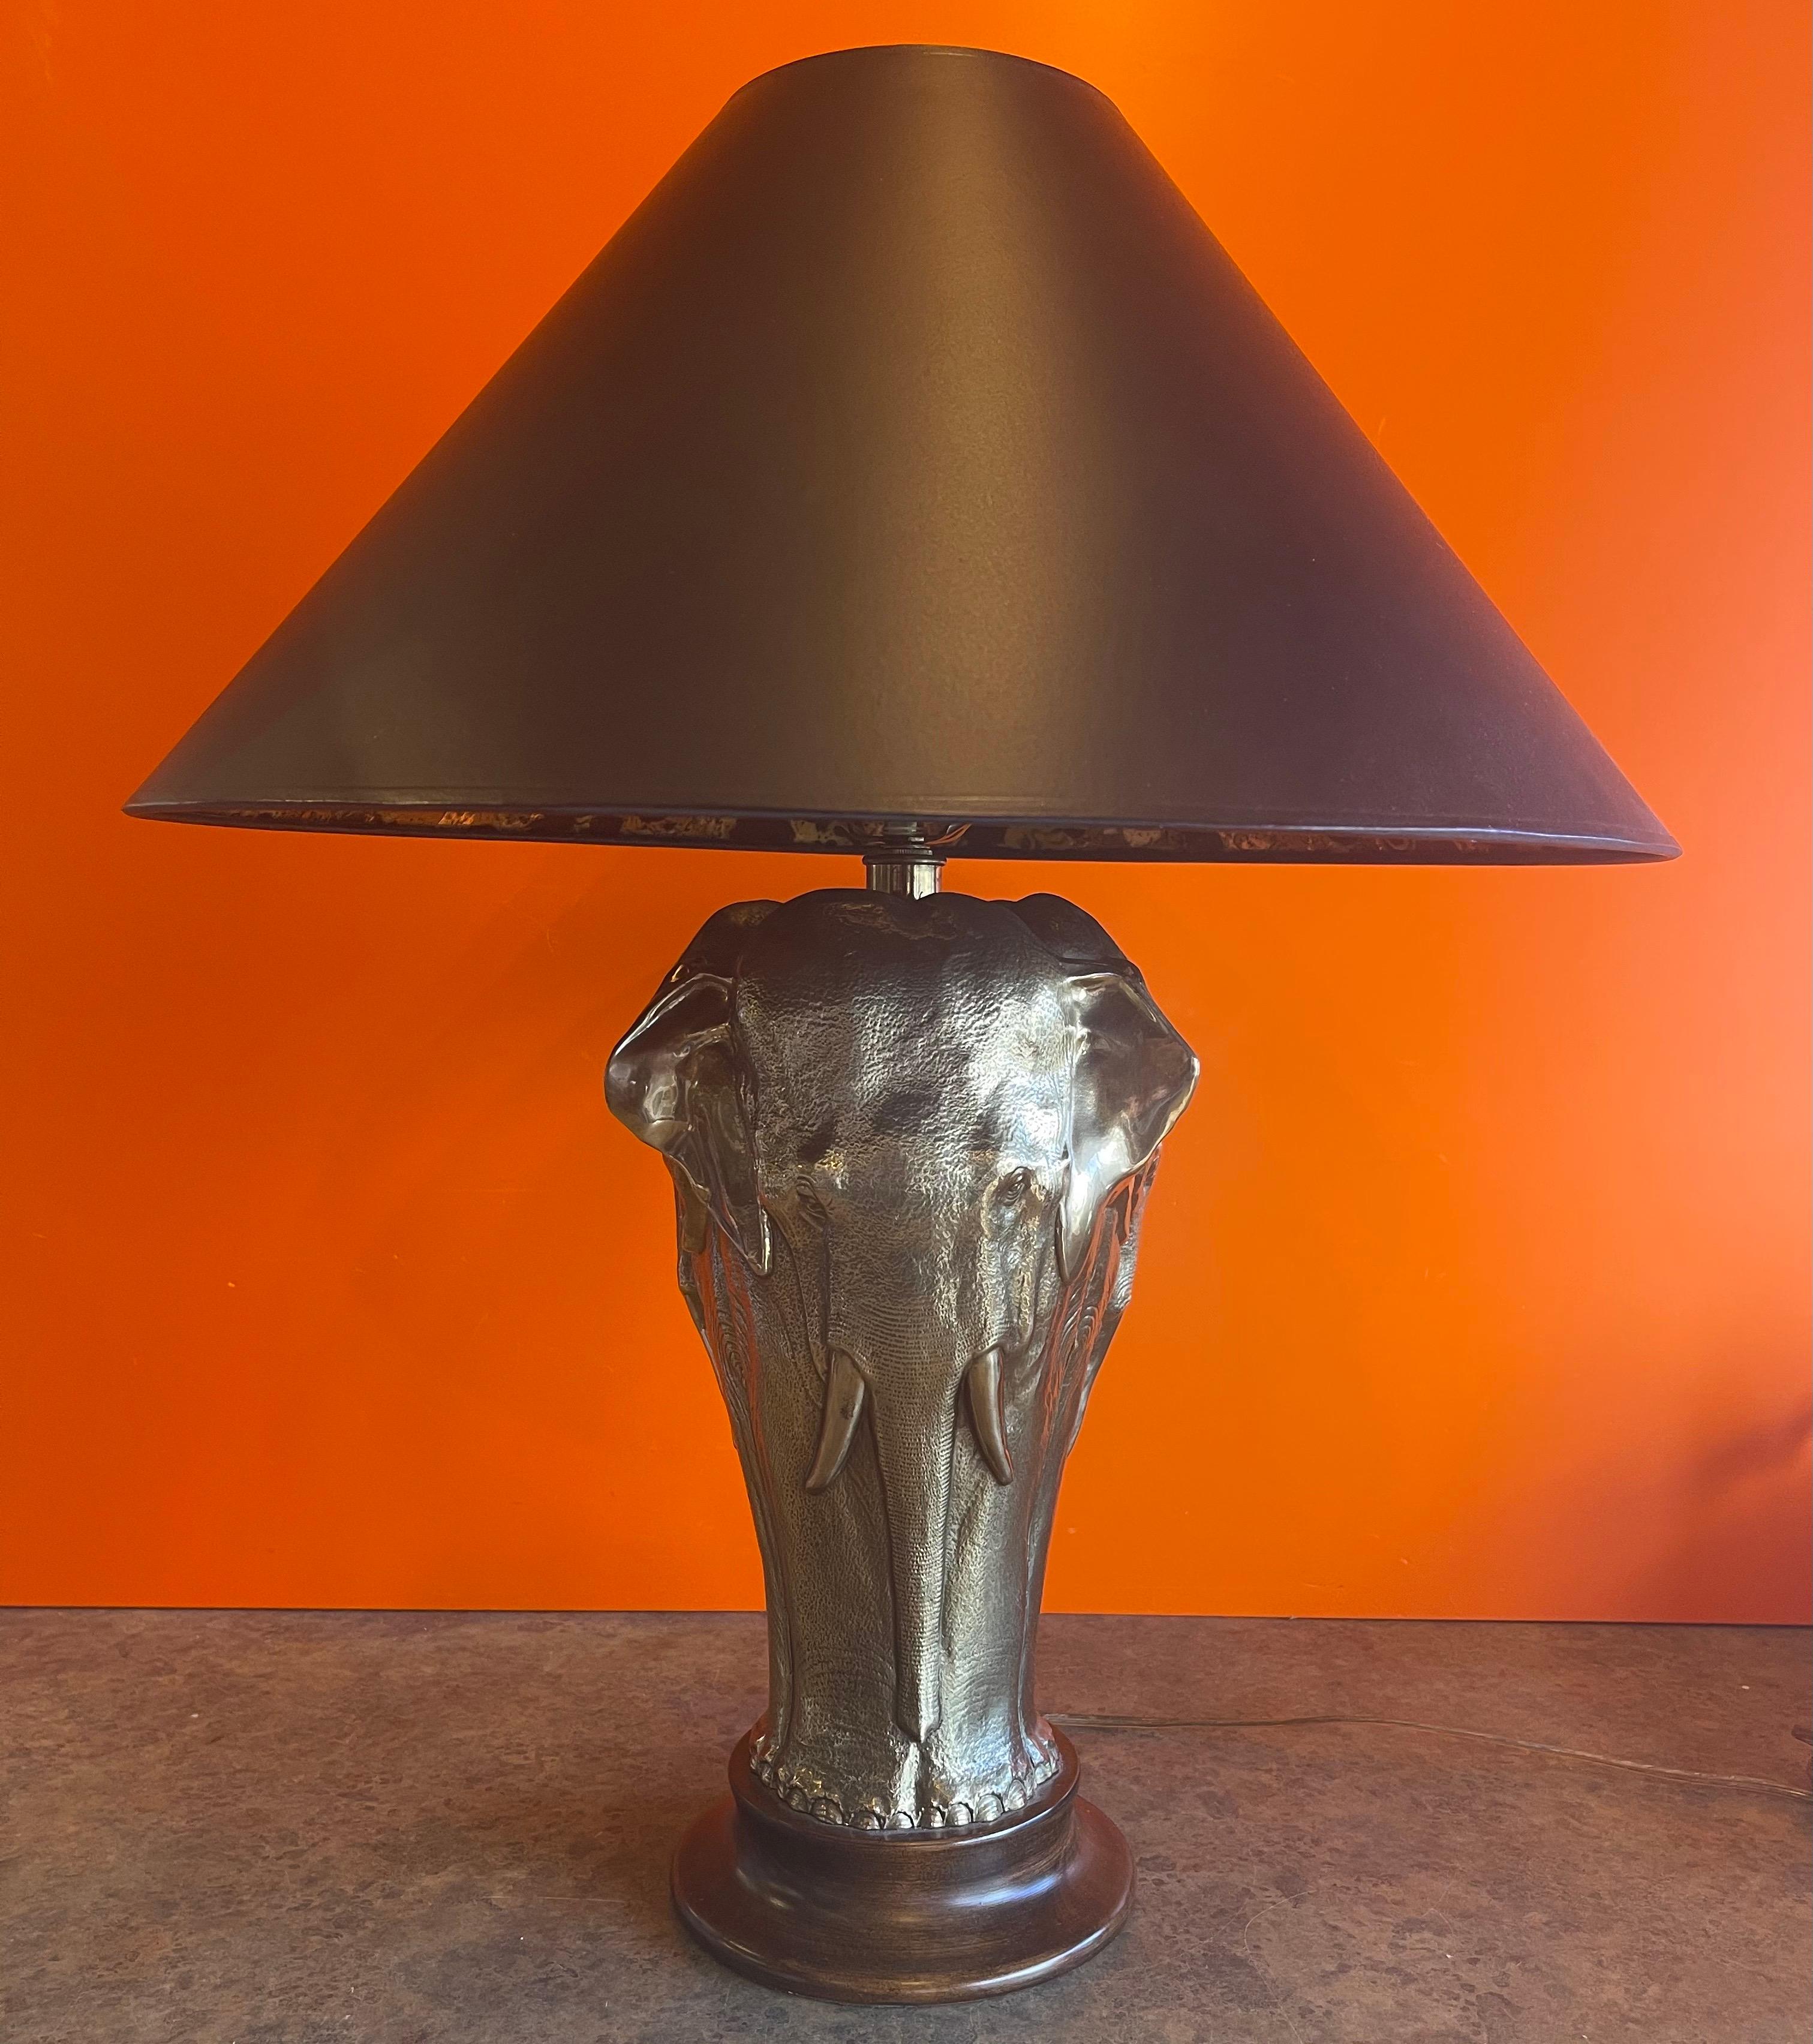 Wunderschöne skulpturale Elefanten-Tischlampe aus Messing auf rundem Holzsockel von Tyndale für Frederick Cooper Lamp Co. aus Chicago, ca. 1970er Jahre. Die Lampe hat einen Elefanten aus Messing, der sich gleichmäßig um den Holzsockel wiederholt,